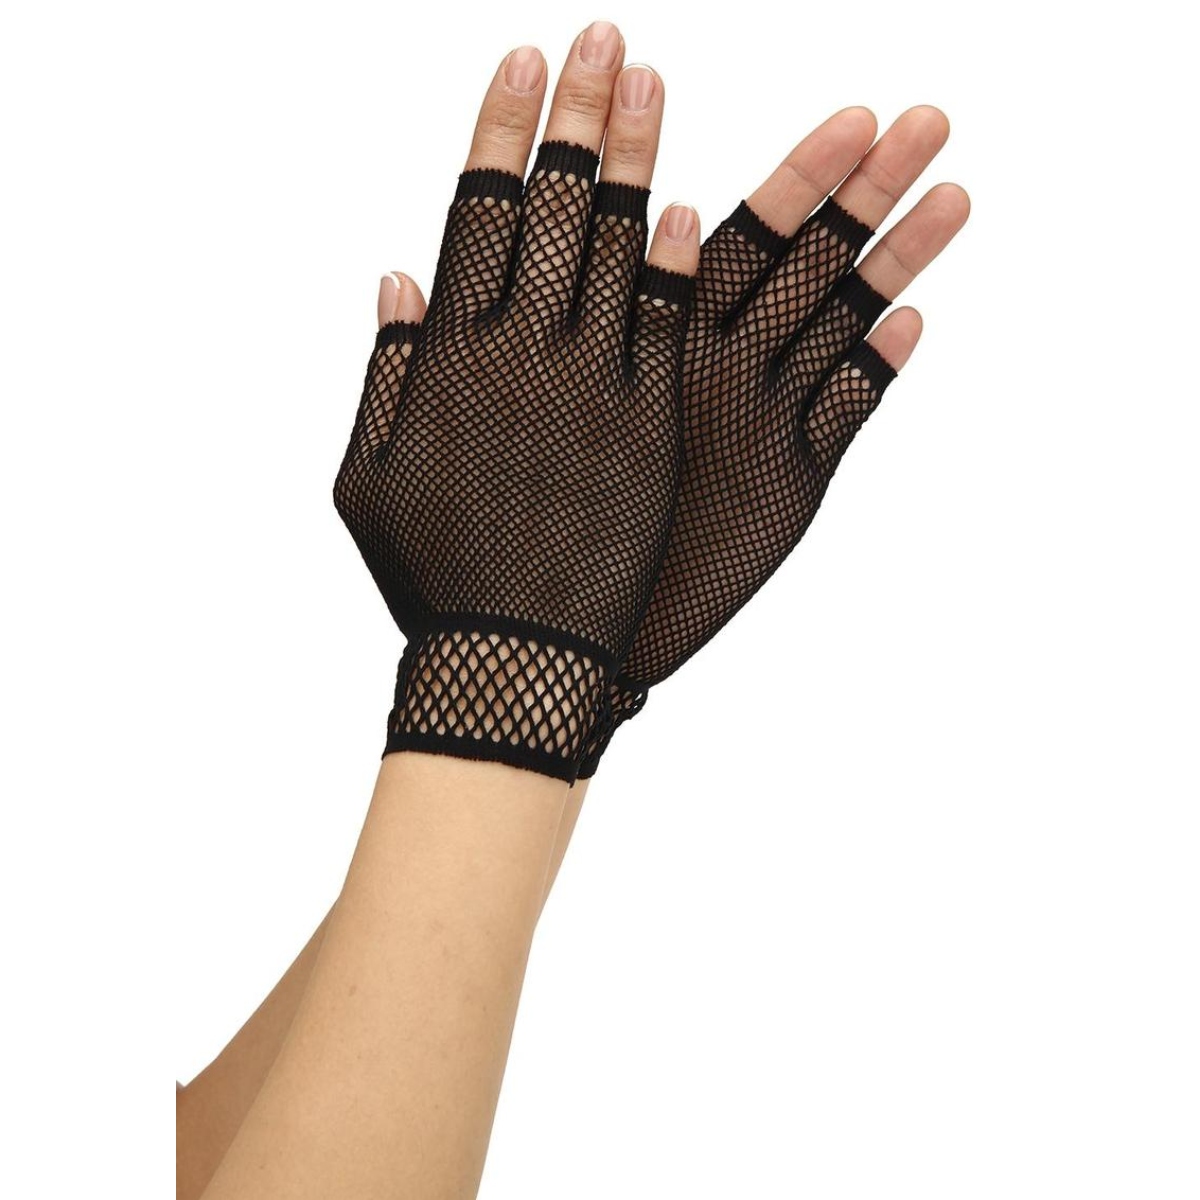 Baci Fingerless Fishnet Glove Black